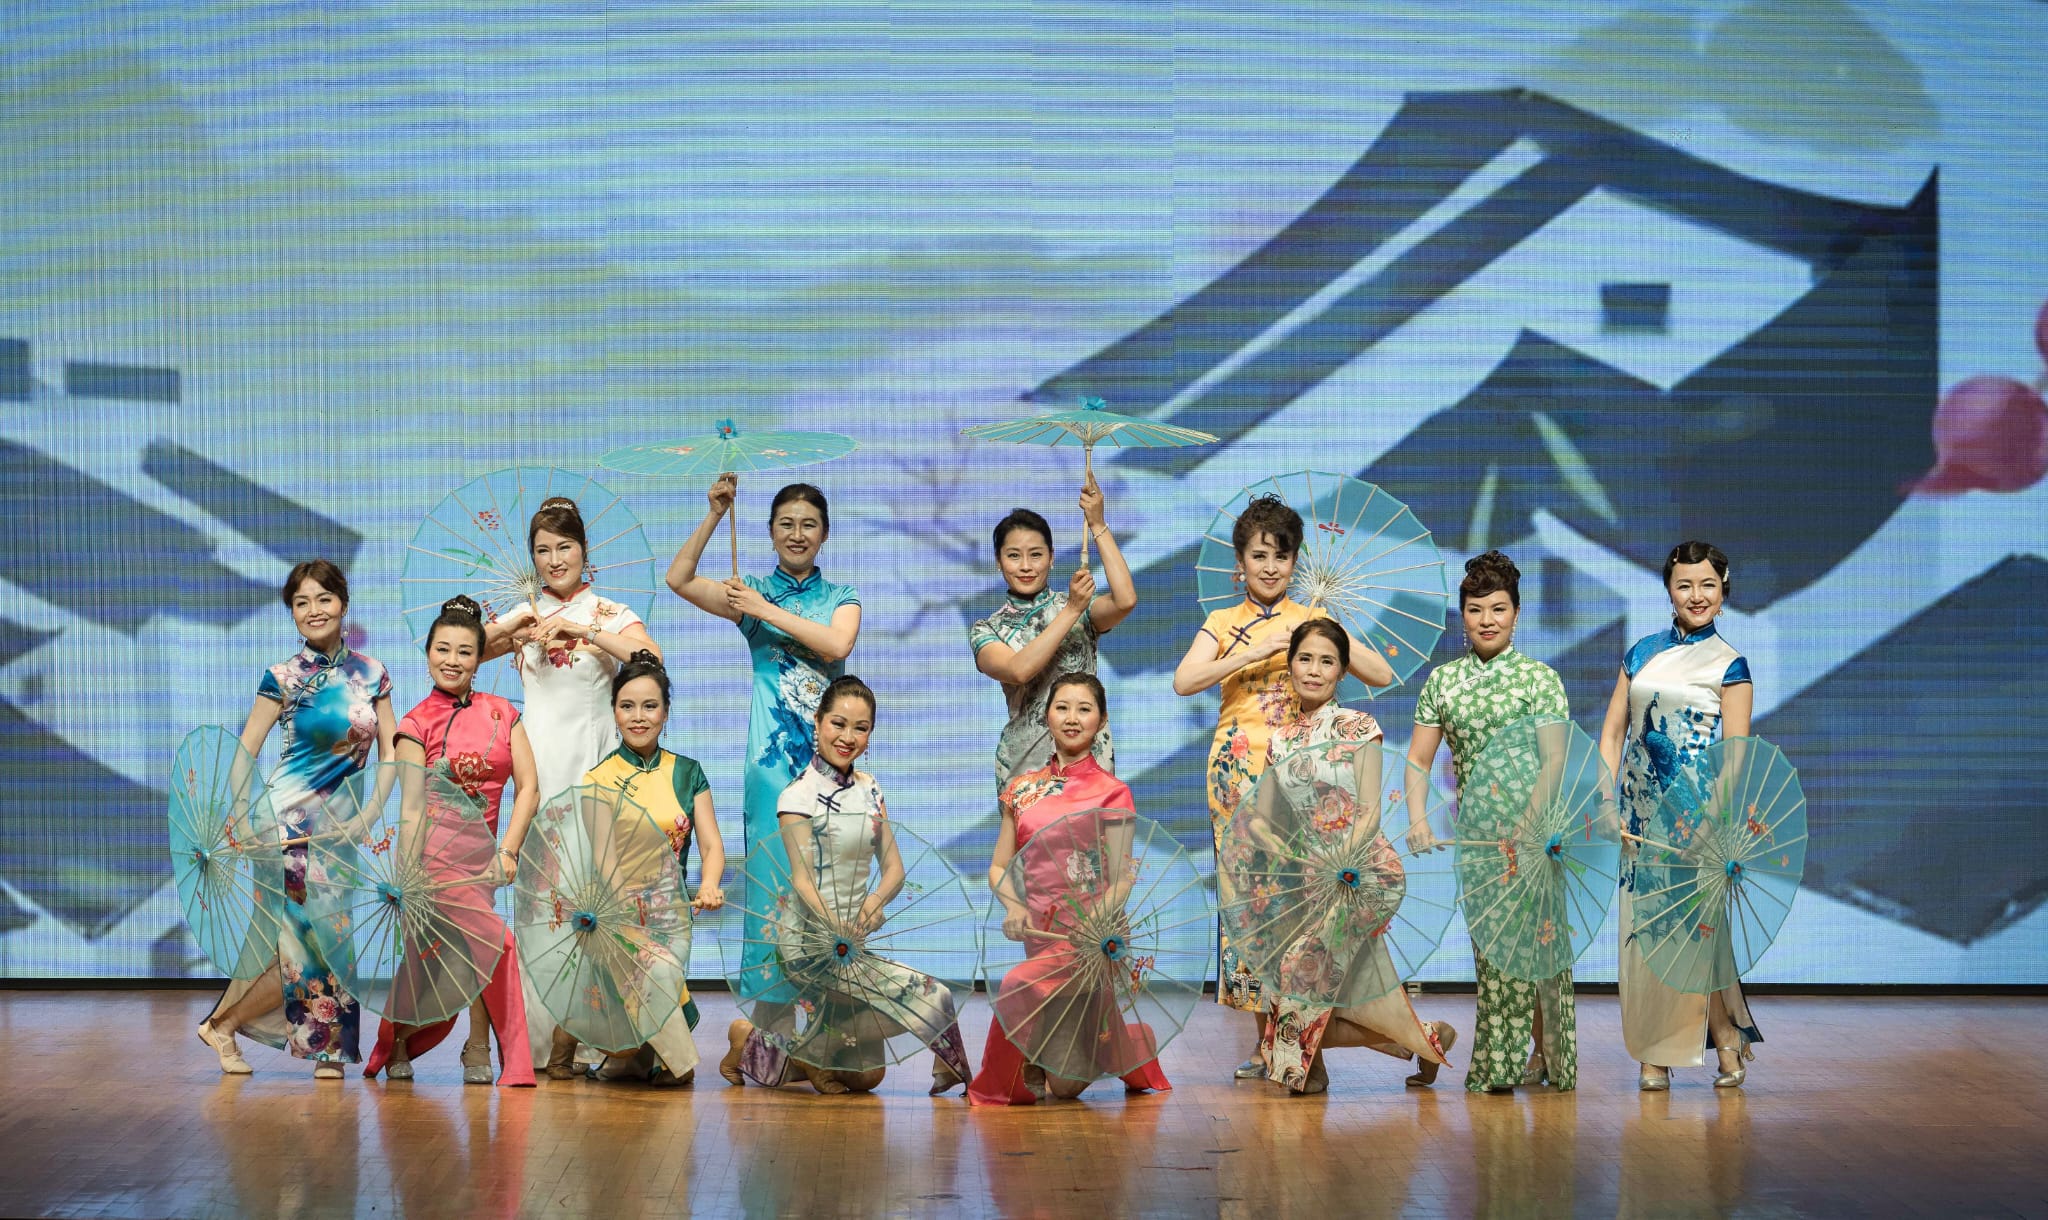 美國華人博物館舉辦旗袍活動 推廣中國文化